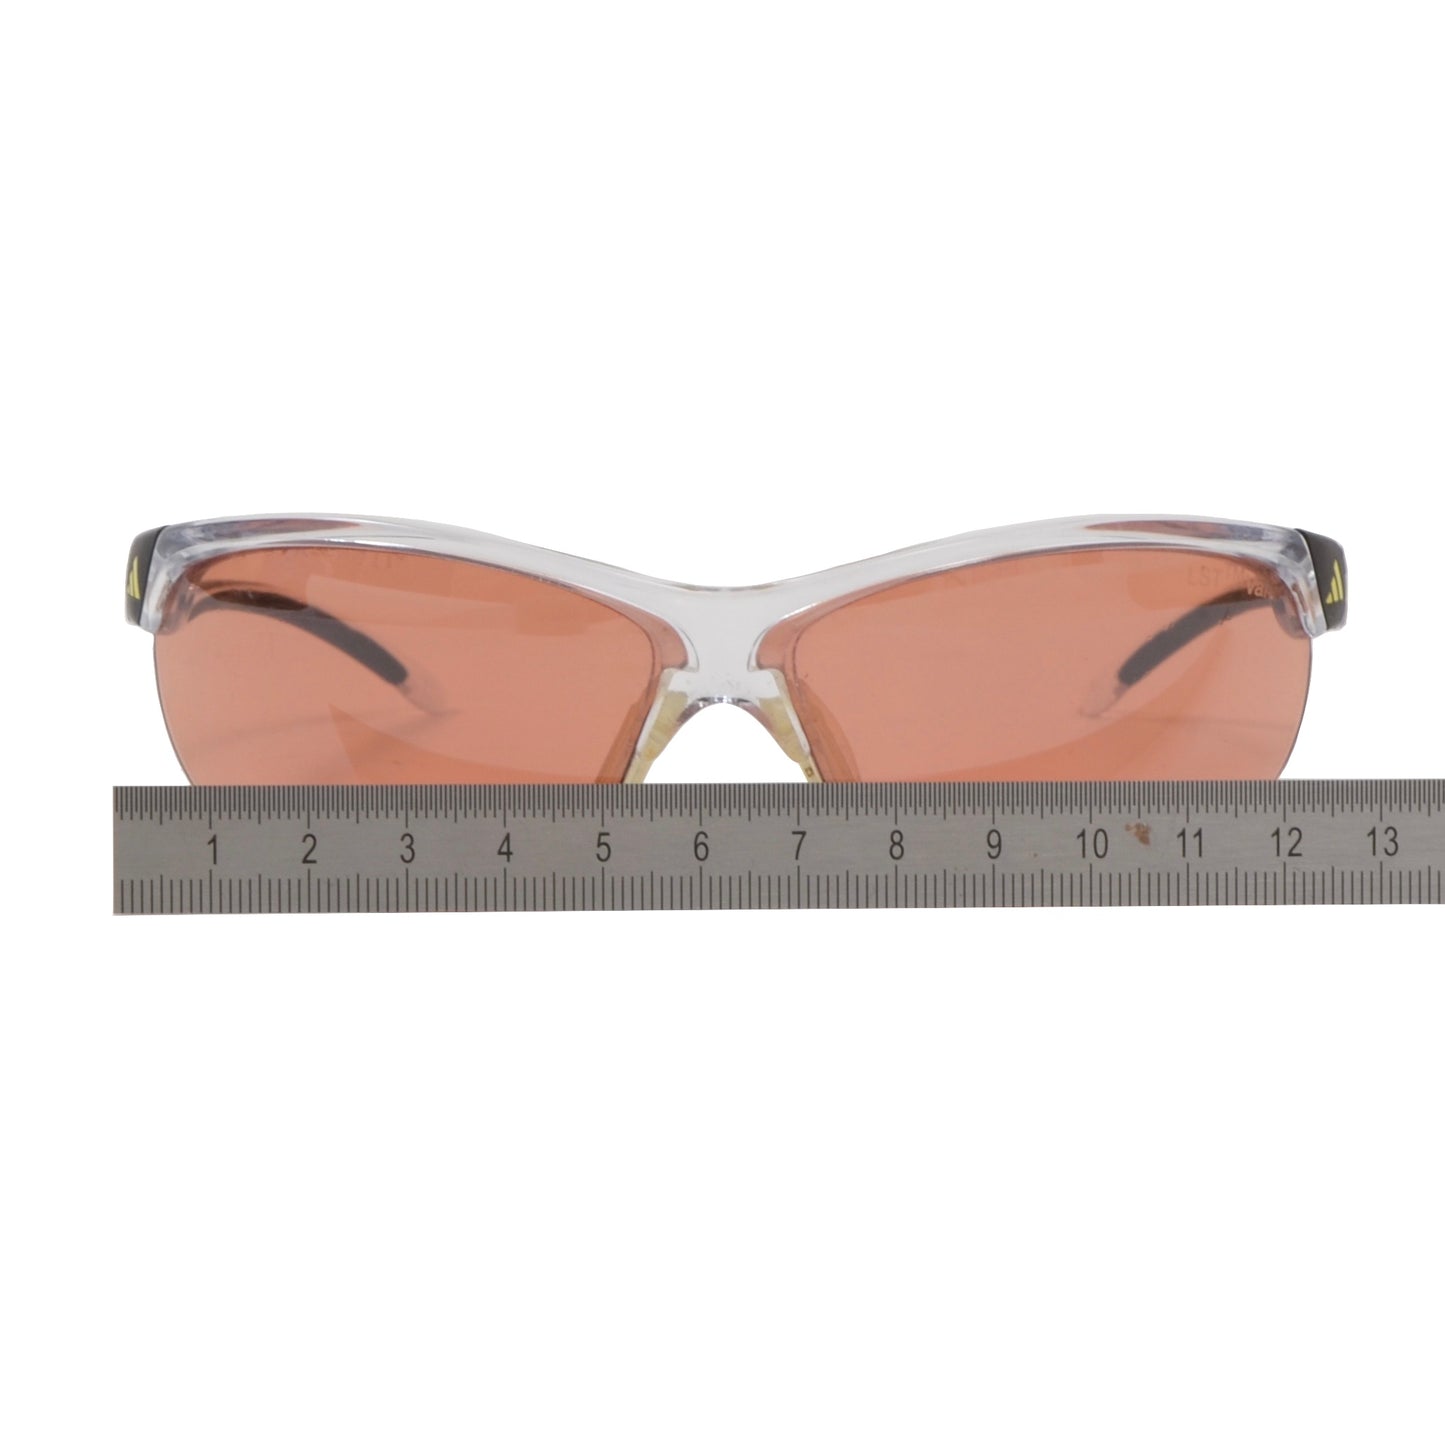 Adidas A171 6053 Adivista Sunglasses - Transparent